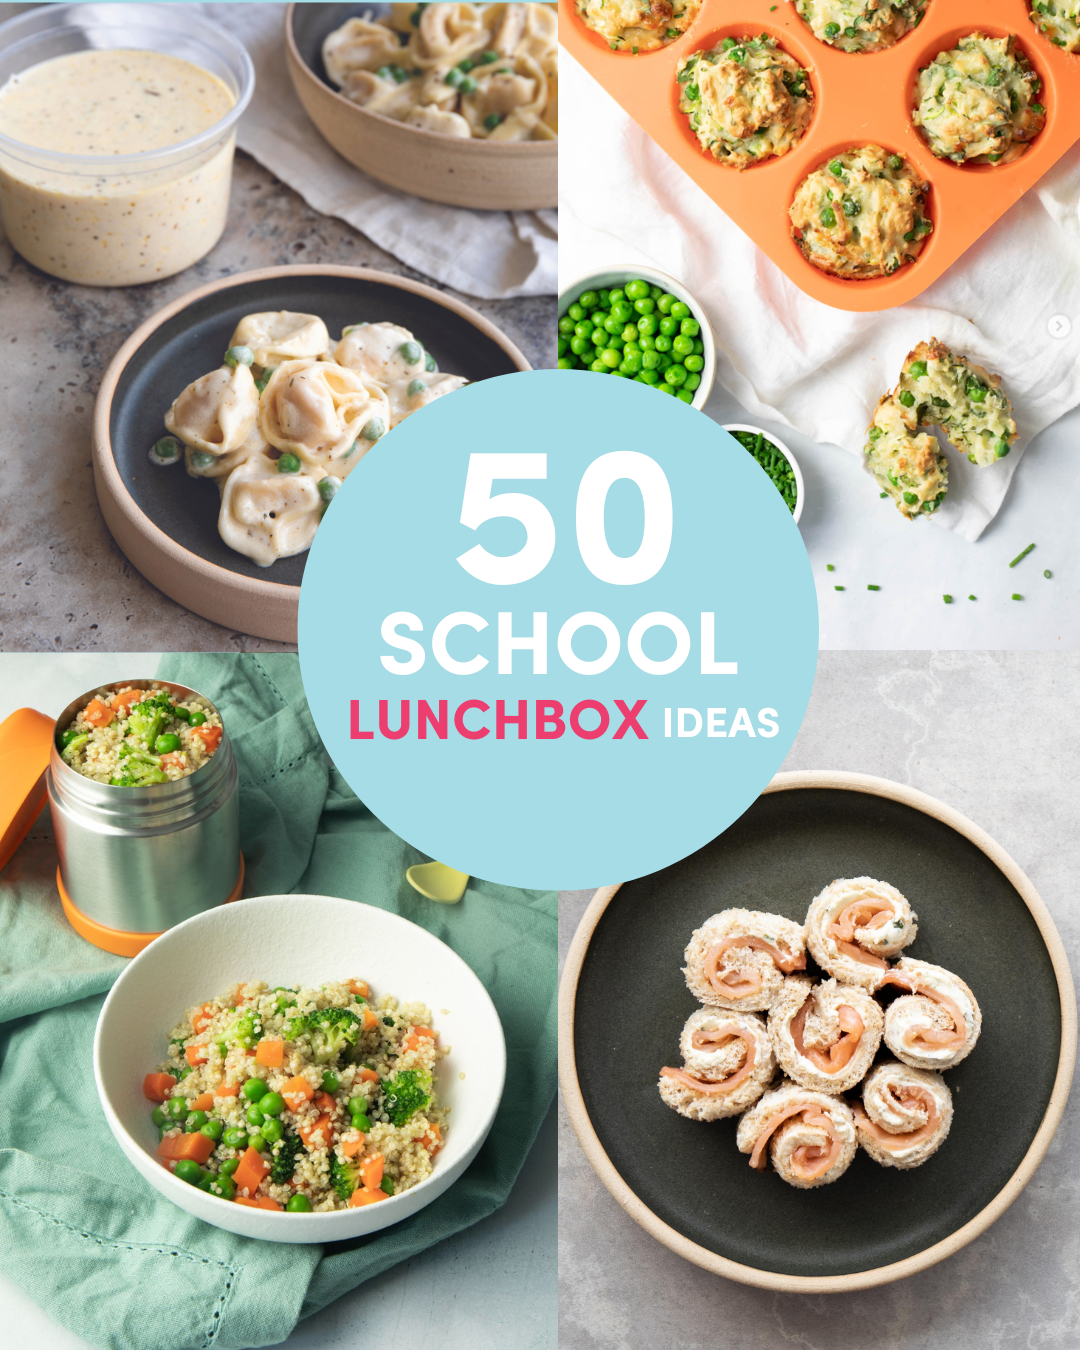 50 school lunchbox ideas